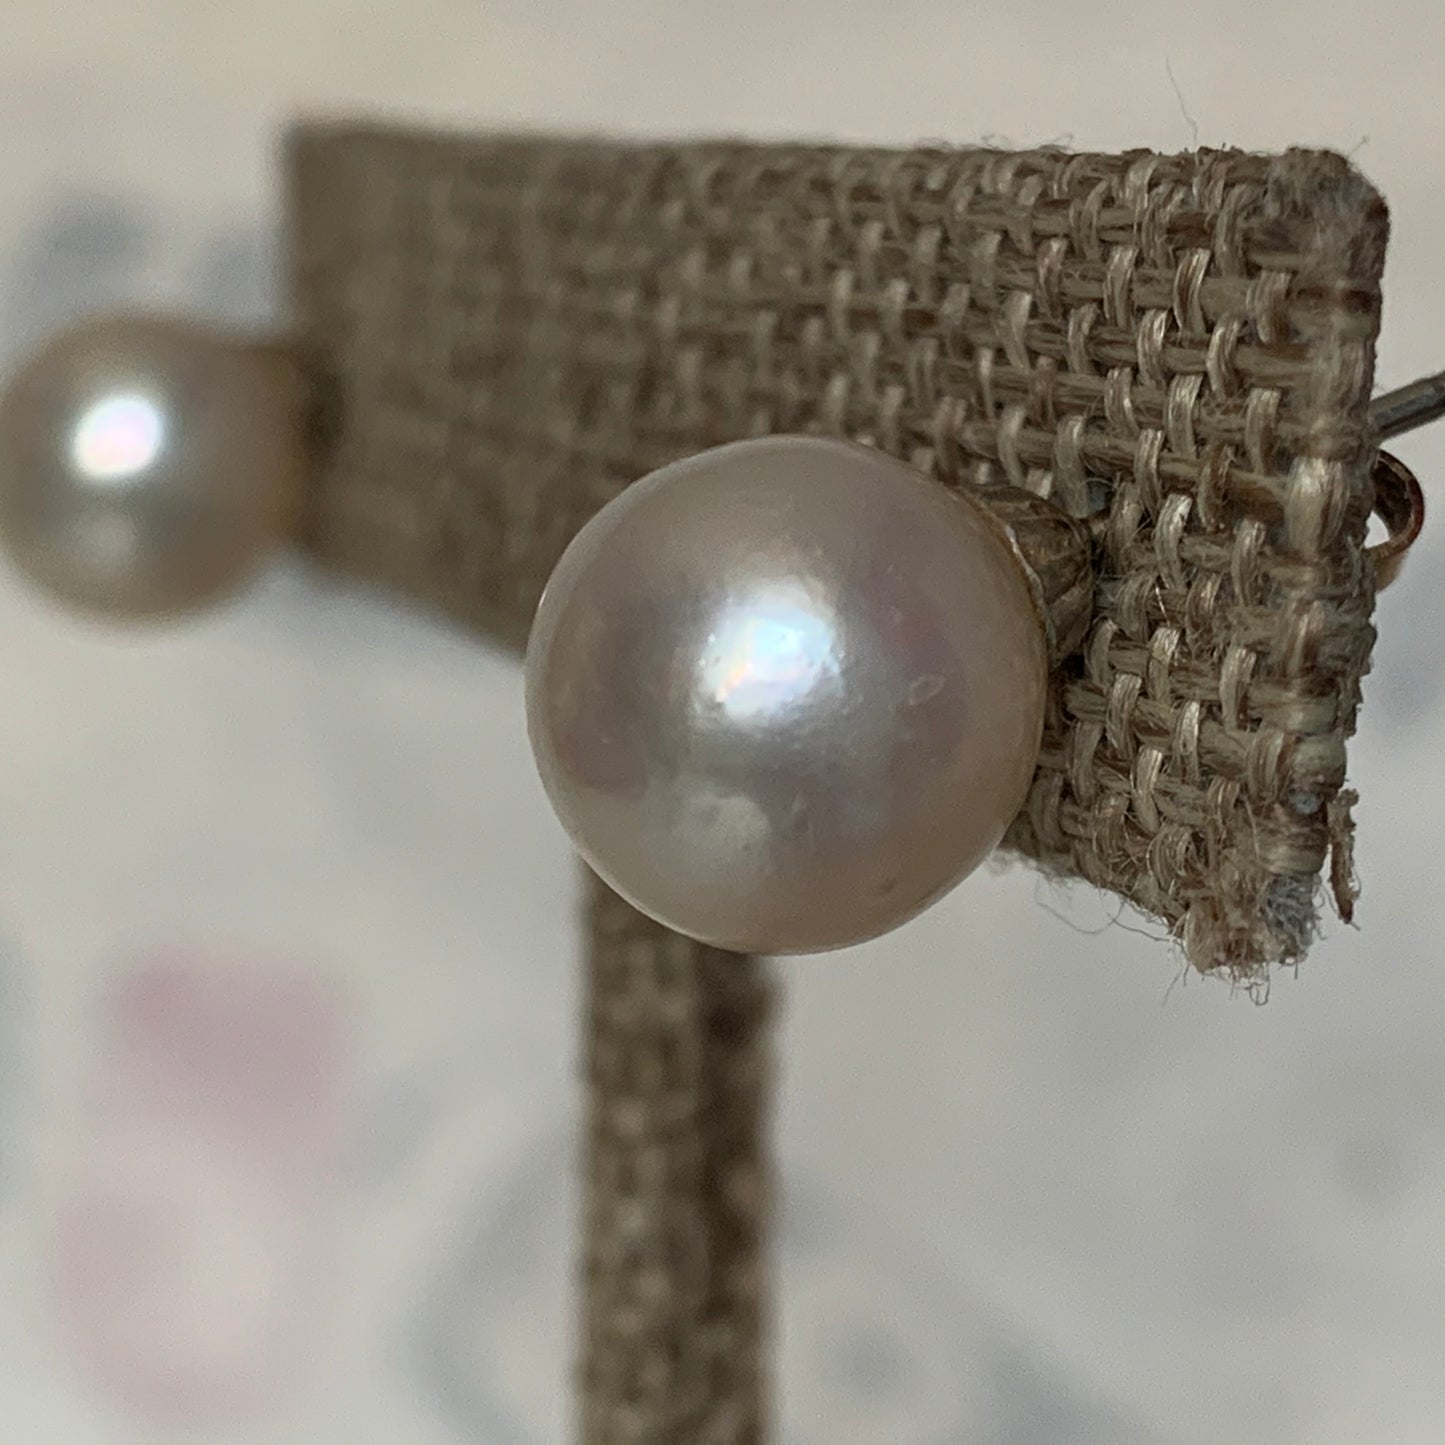 A pair of pearl stud earrings